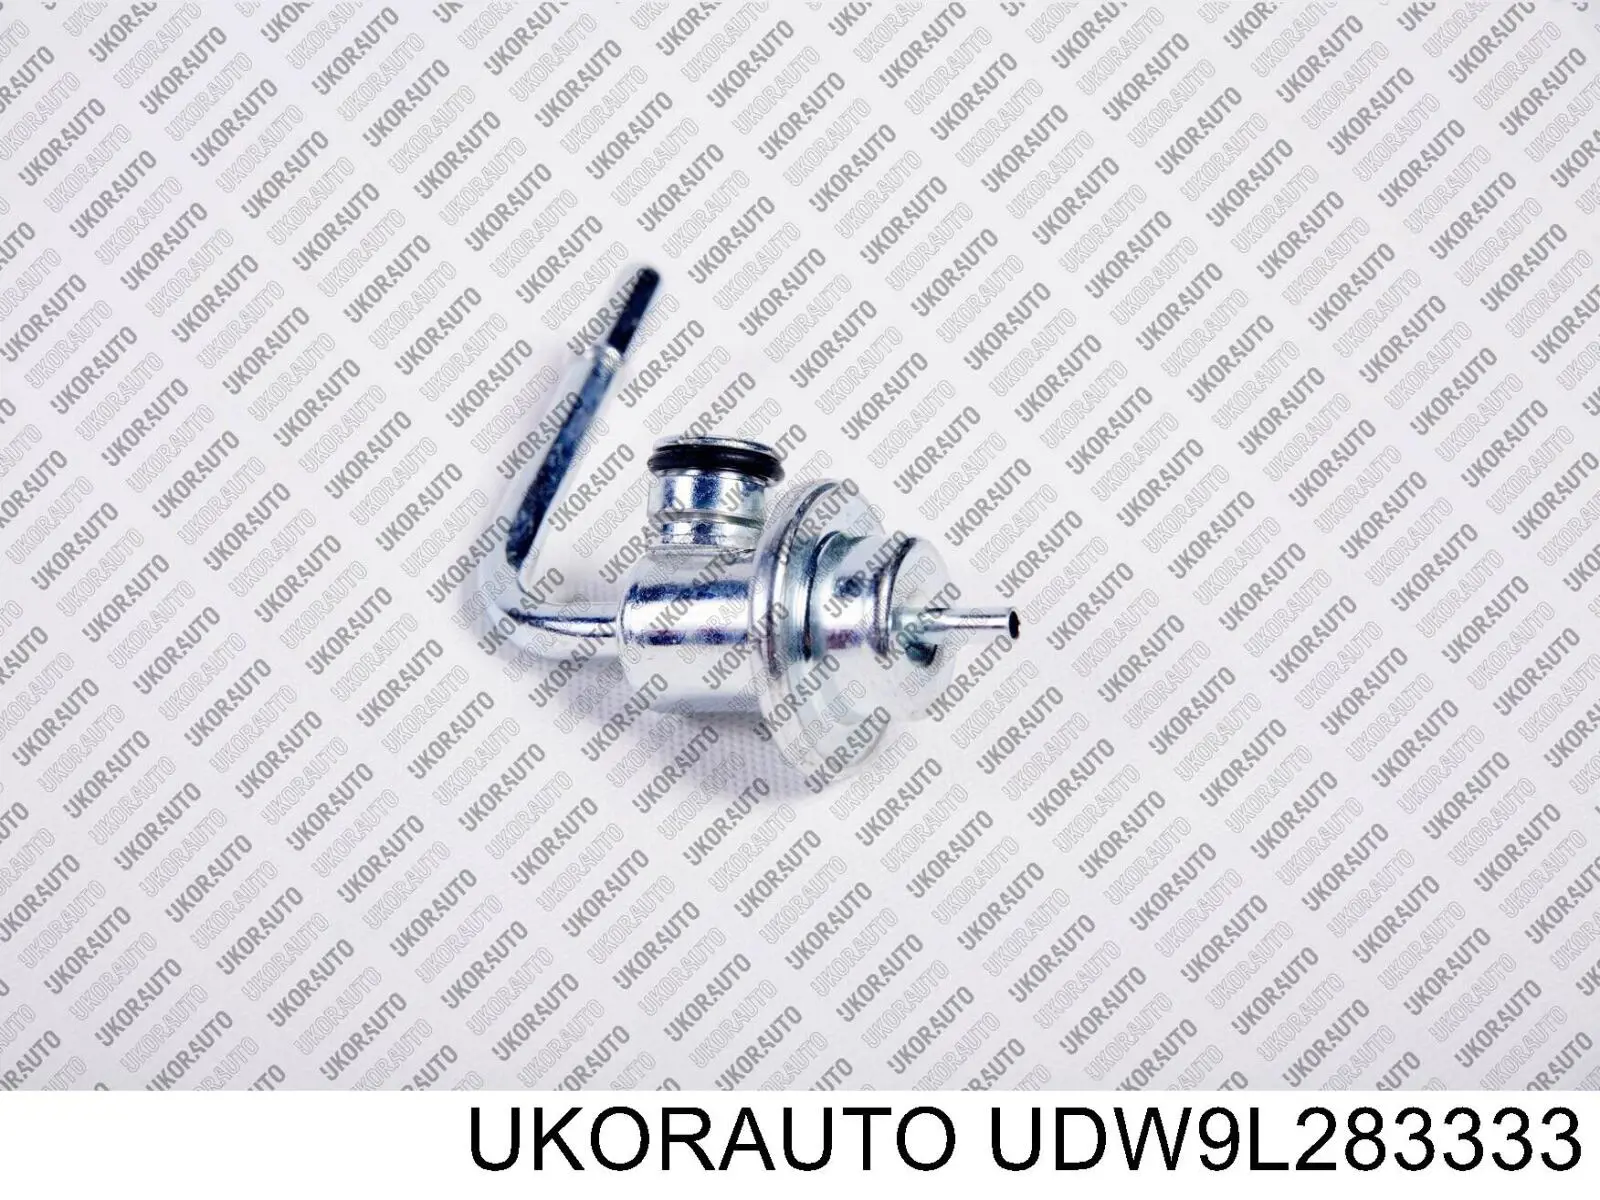 Регулятор давления топлива UDW9L283333 UKORAUTO